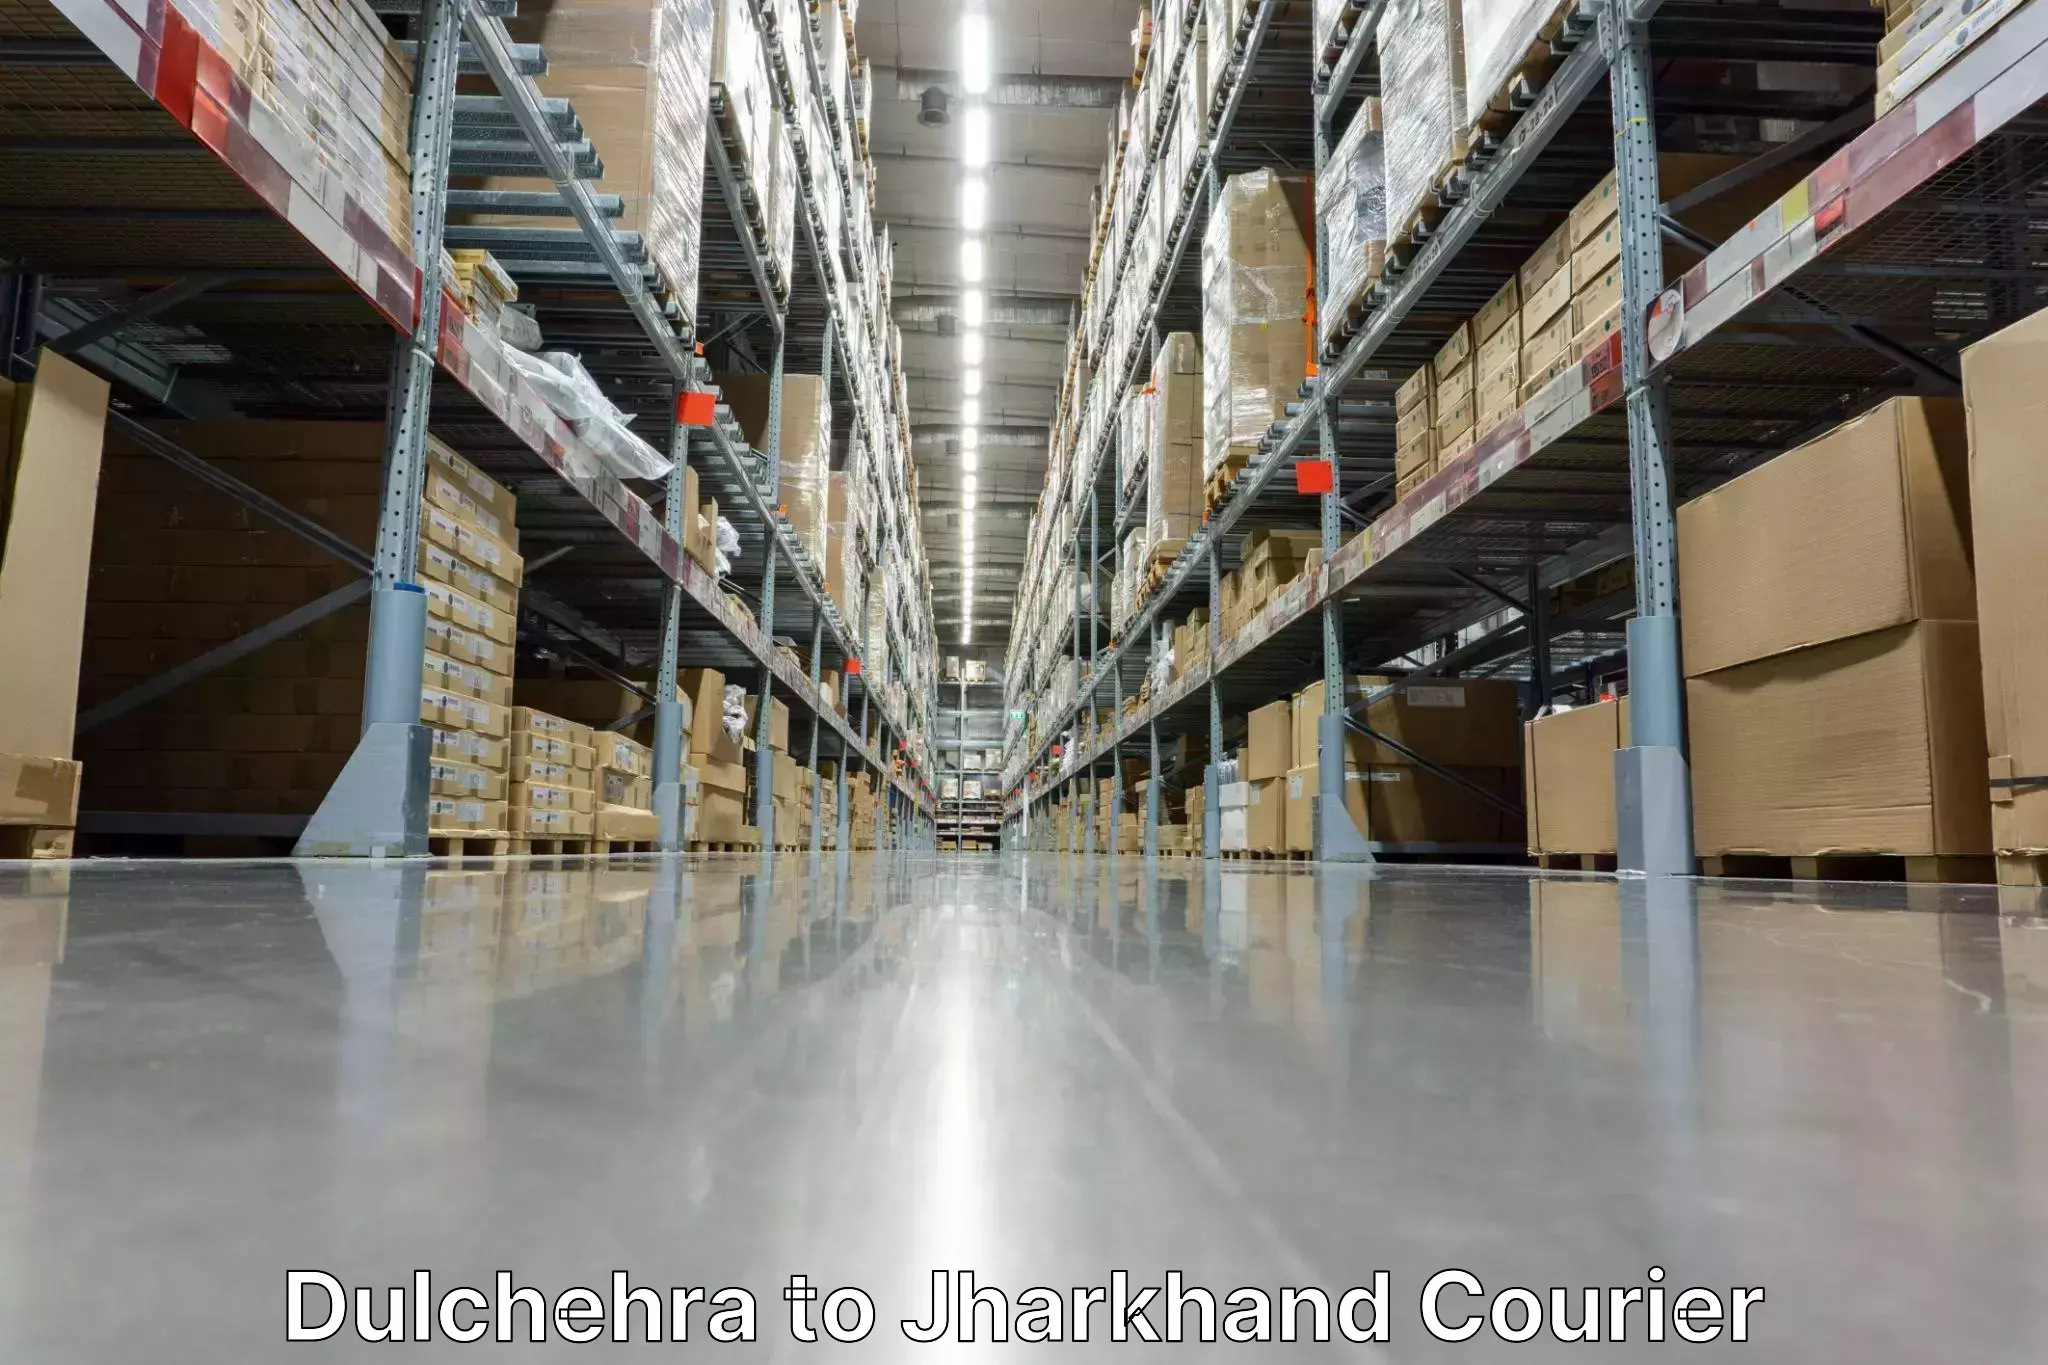 Courier service partnerships Dulchehra to Hazaribagh